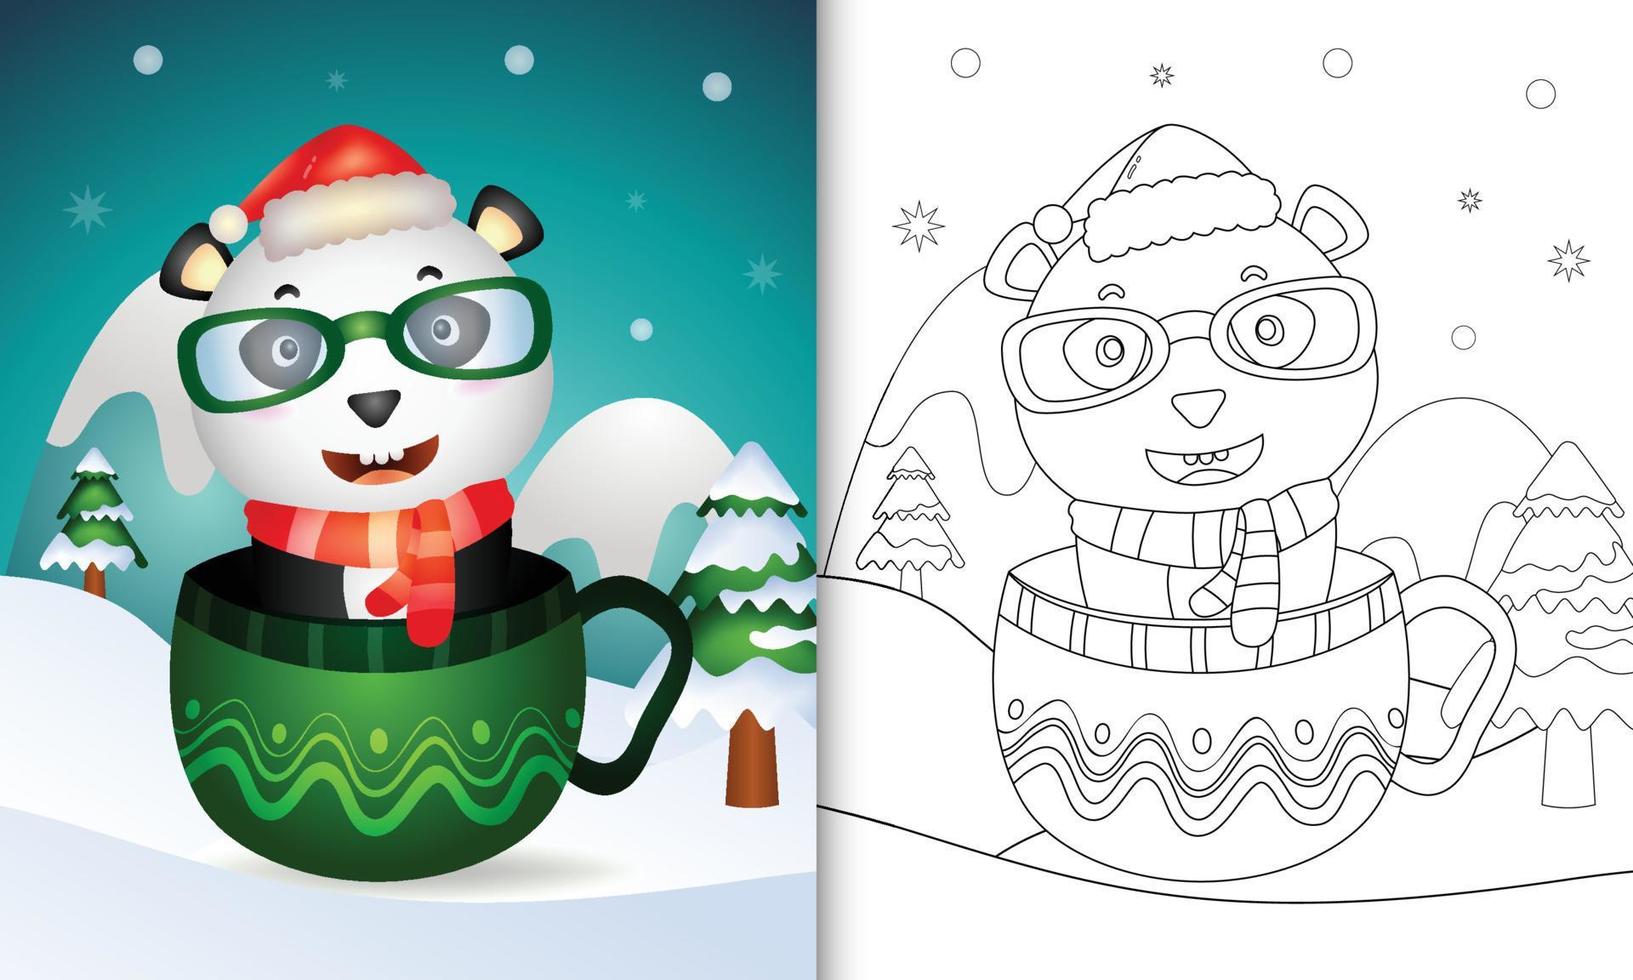 kleurboek met schattige panda kerstfiguren met een kerstmuts en sjaal in de beker vector